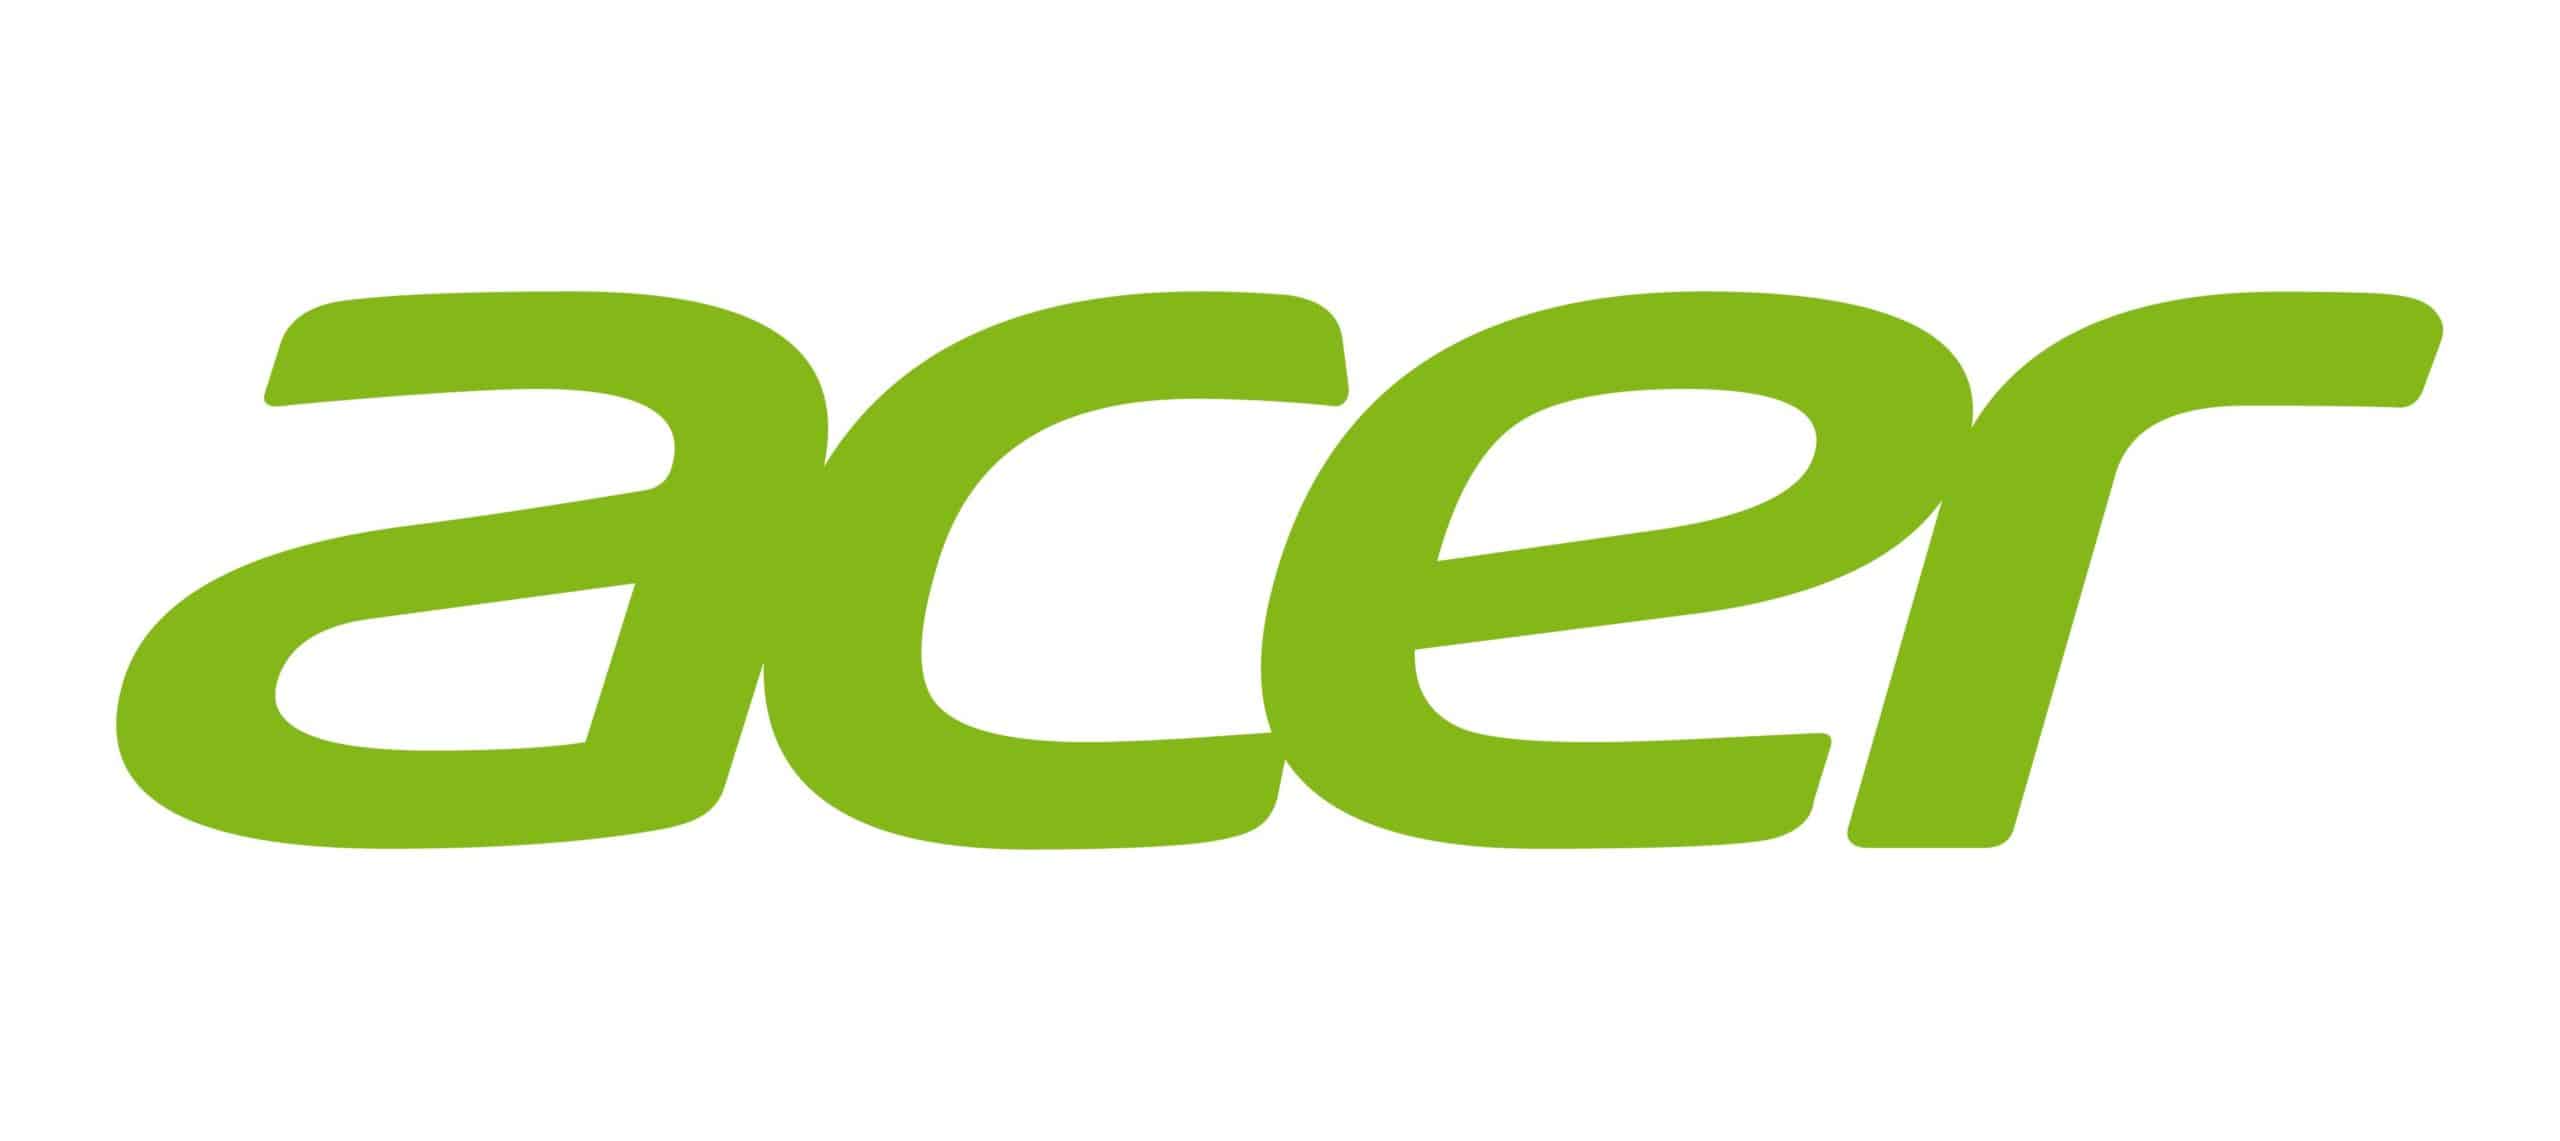 Acer reveals an all-new portfolio